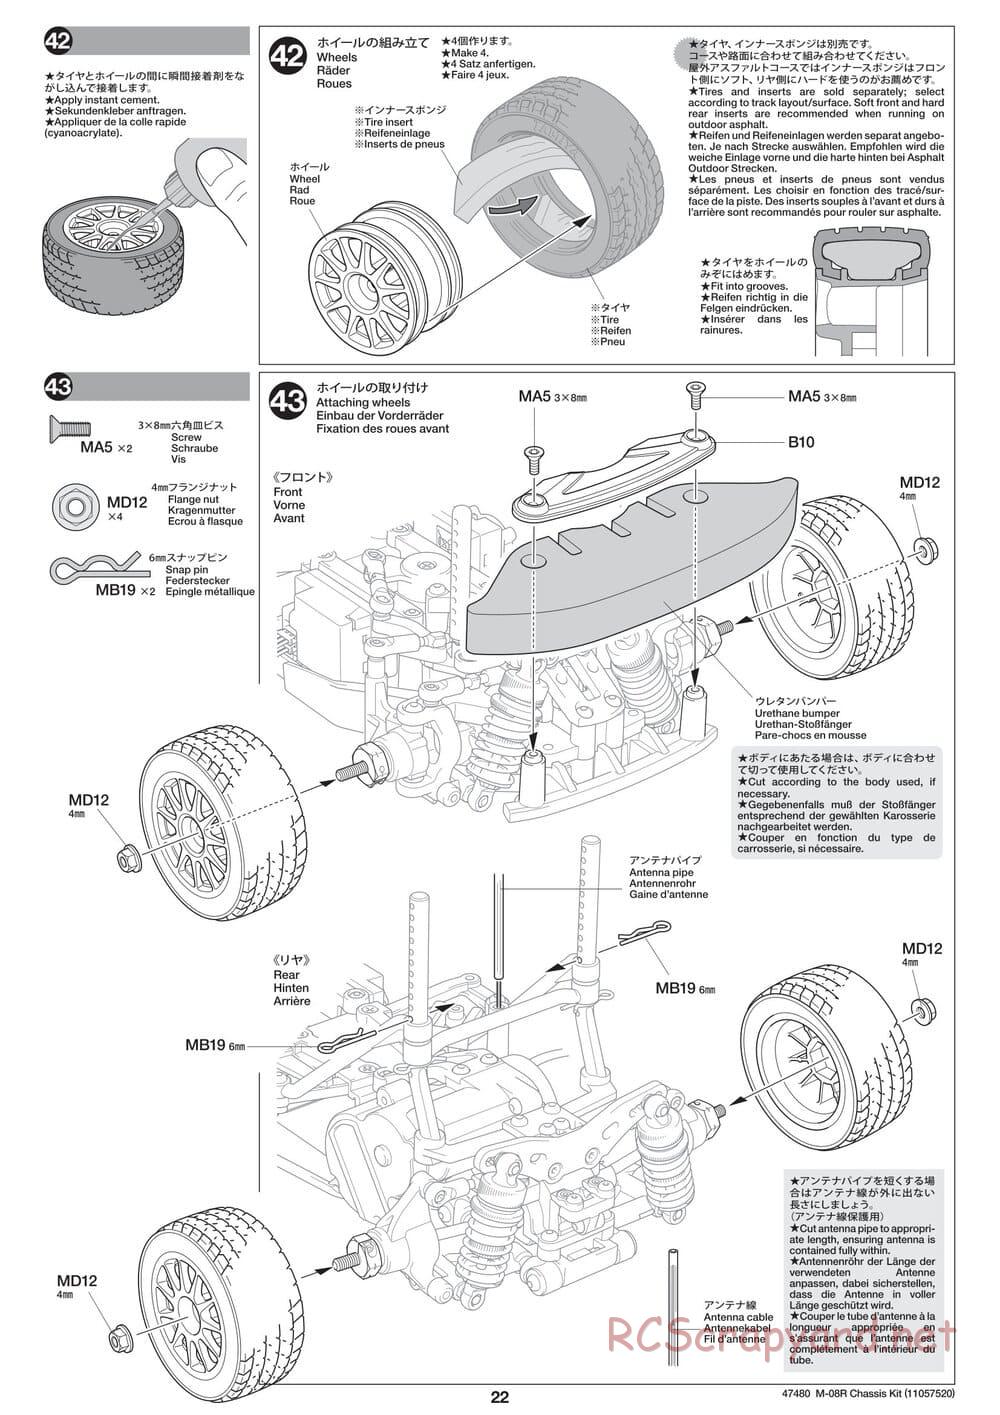 Tamiya - M-08R Chassis - Manual - Page 22